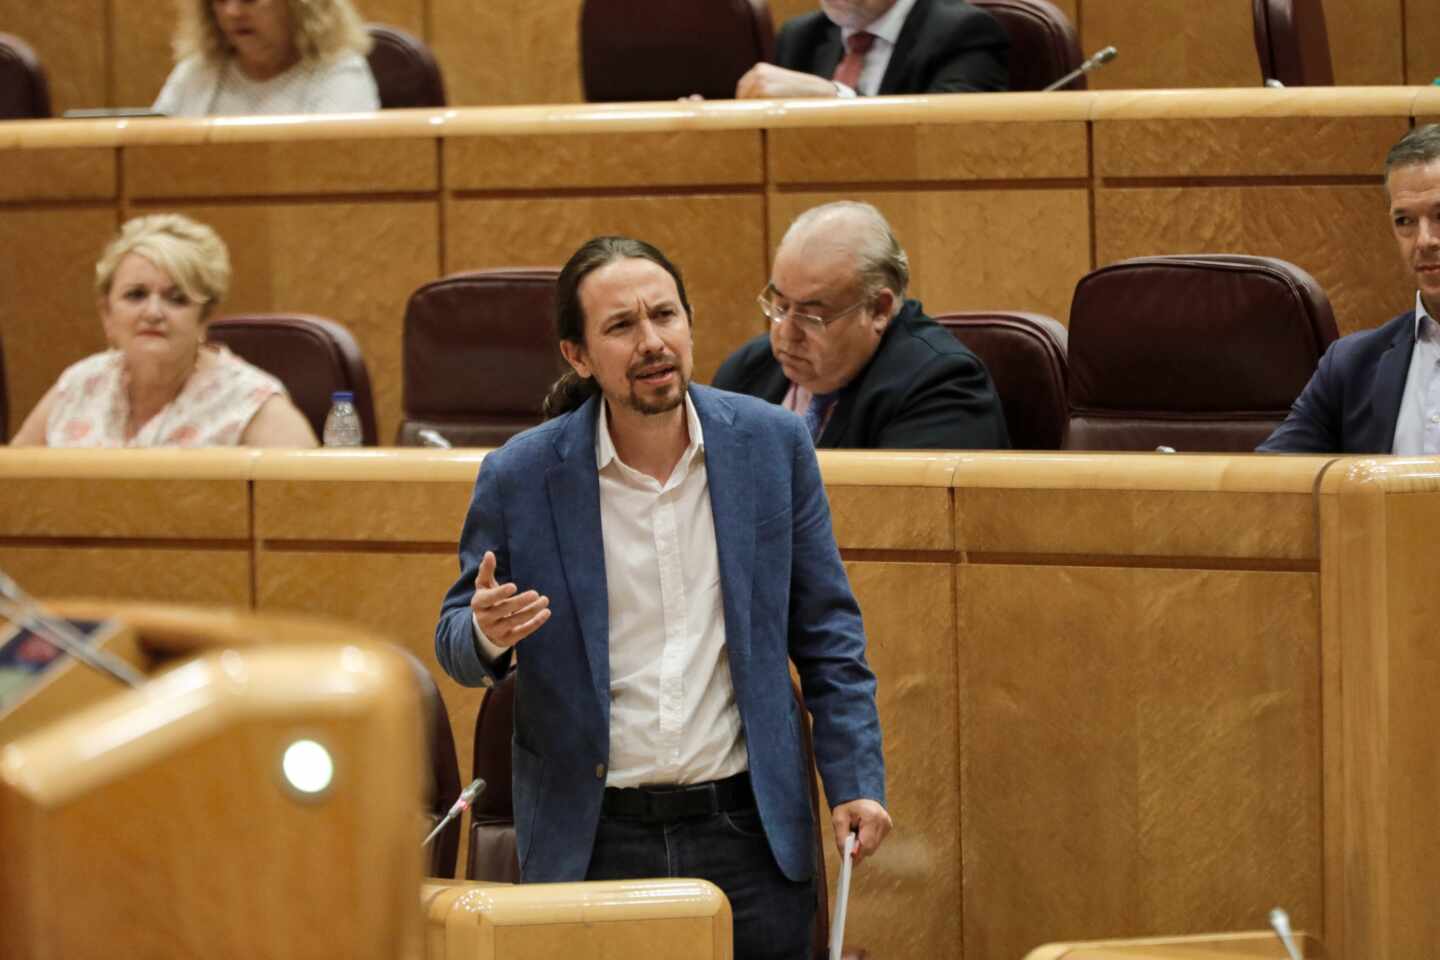 Iglesias les dice a los senadores del PP que muchos "estarían en la cárcel" si les hubieran investigado